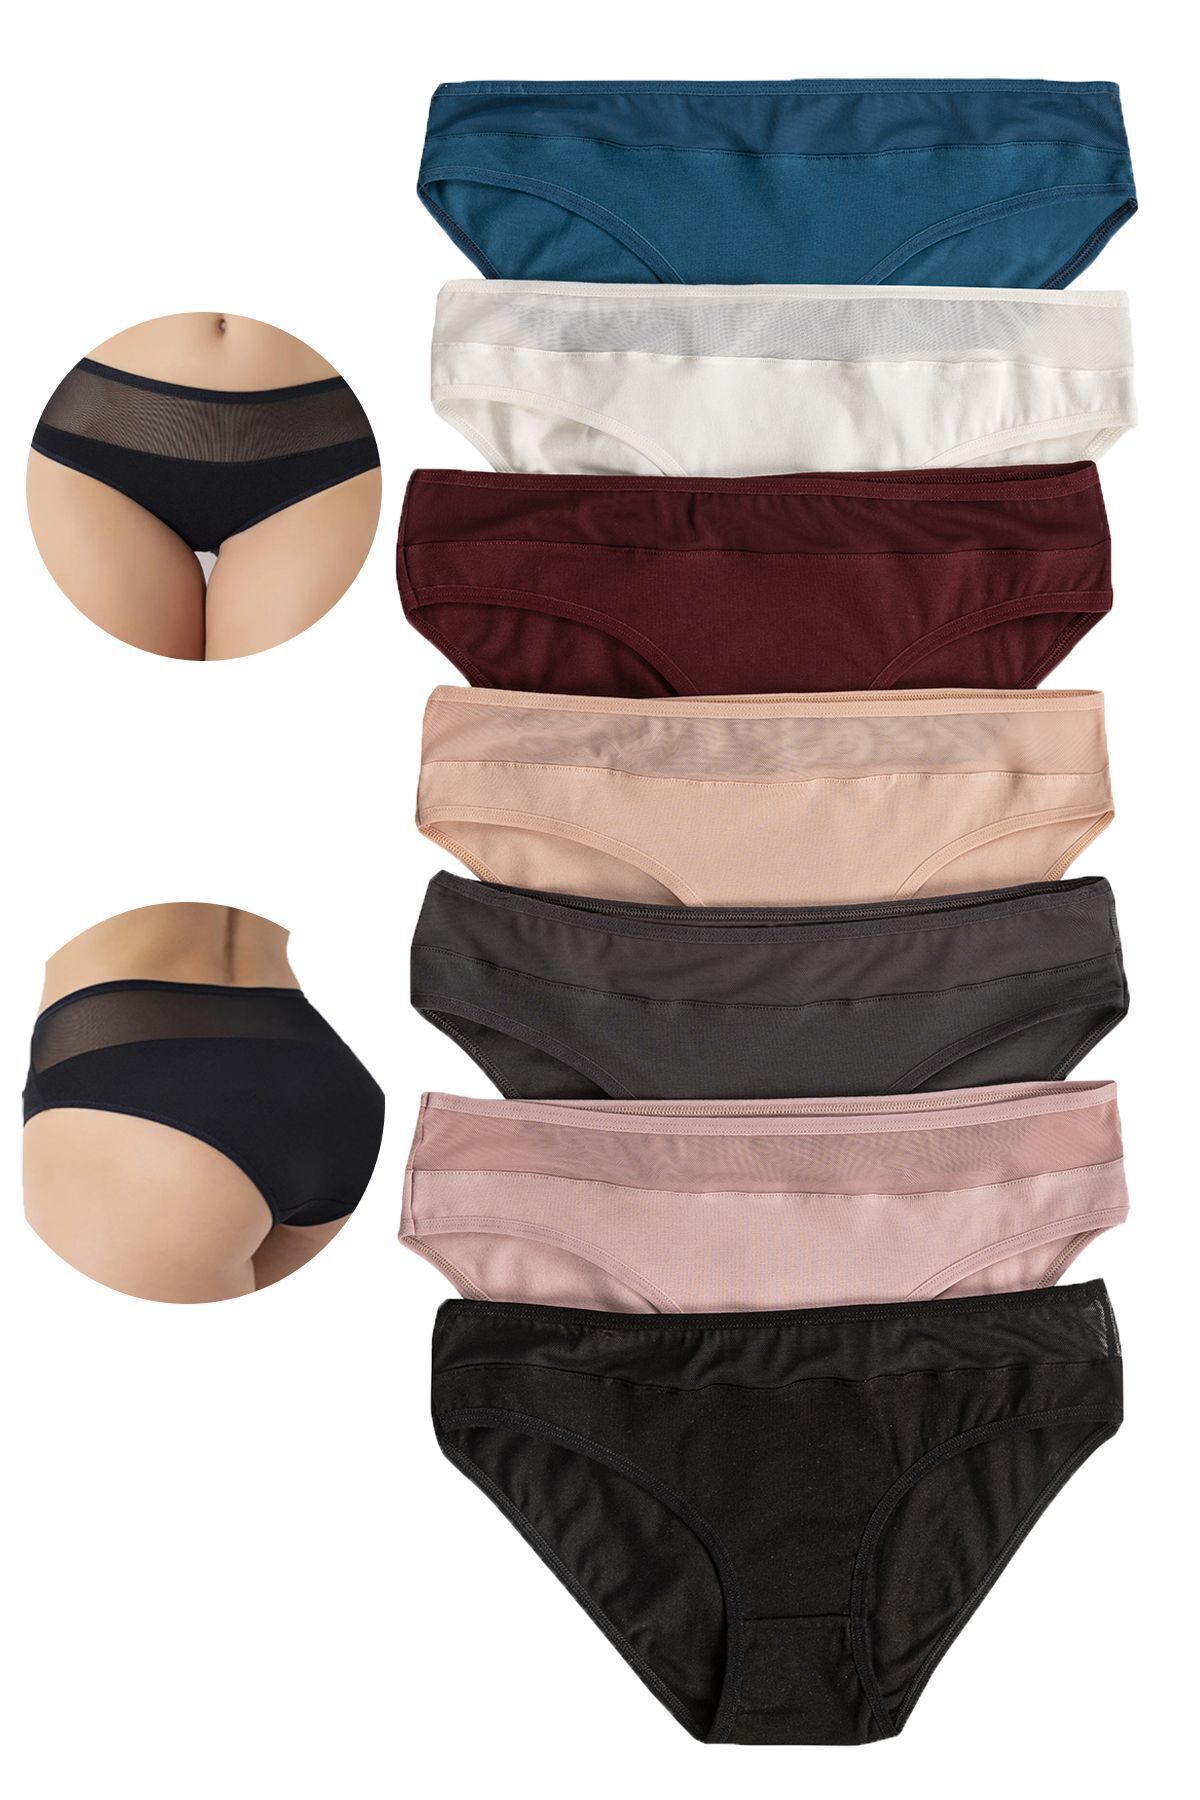 ÖZKAN underwear Özkan 26797 7'li Paket Kadın Bel Kısmı Tül Detaylı Likralı Pamuklu Esnek Rahat Slip Bikini Külot